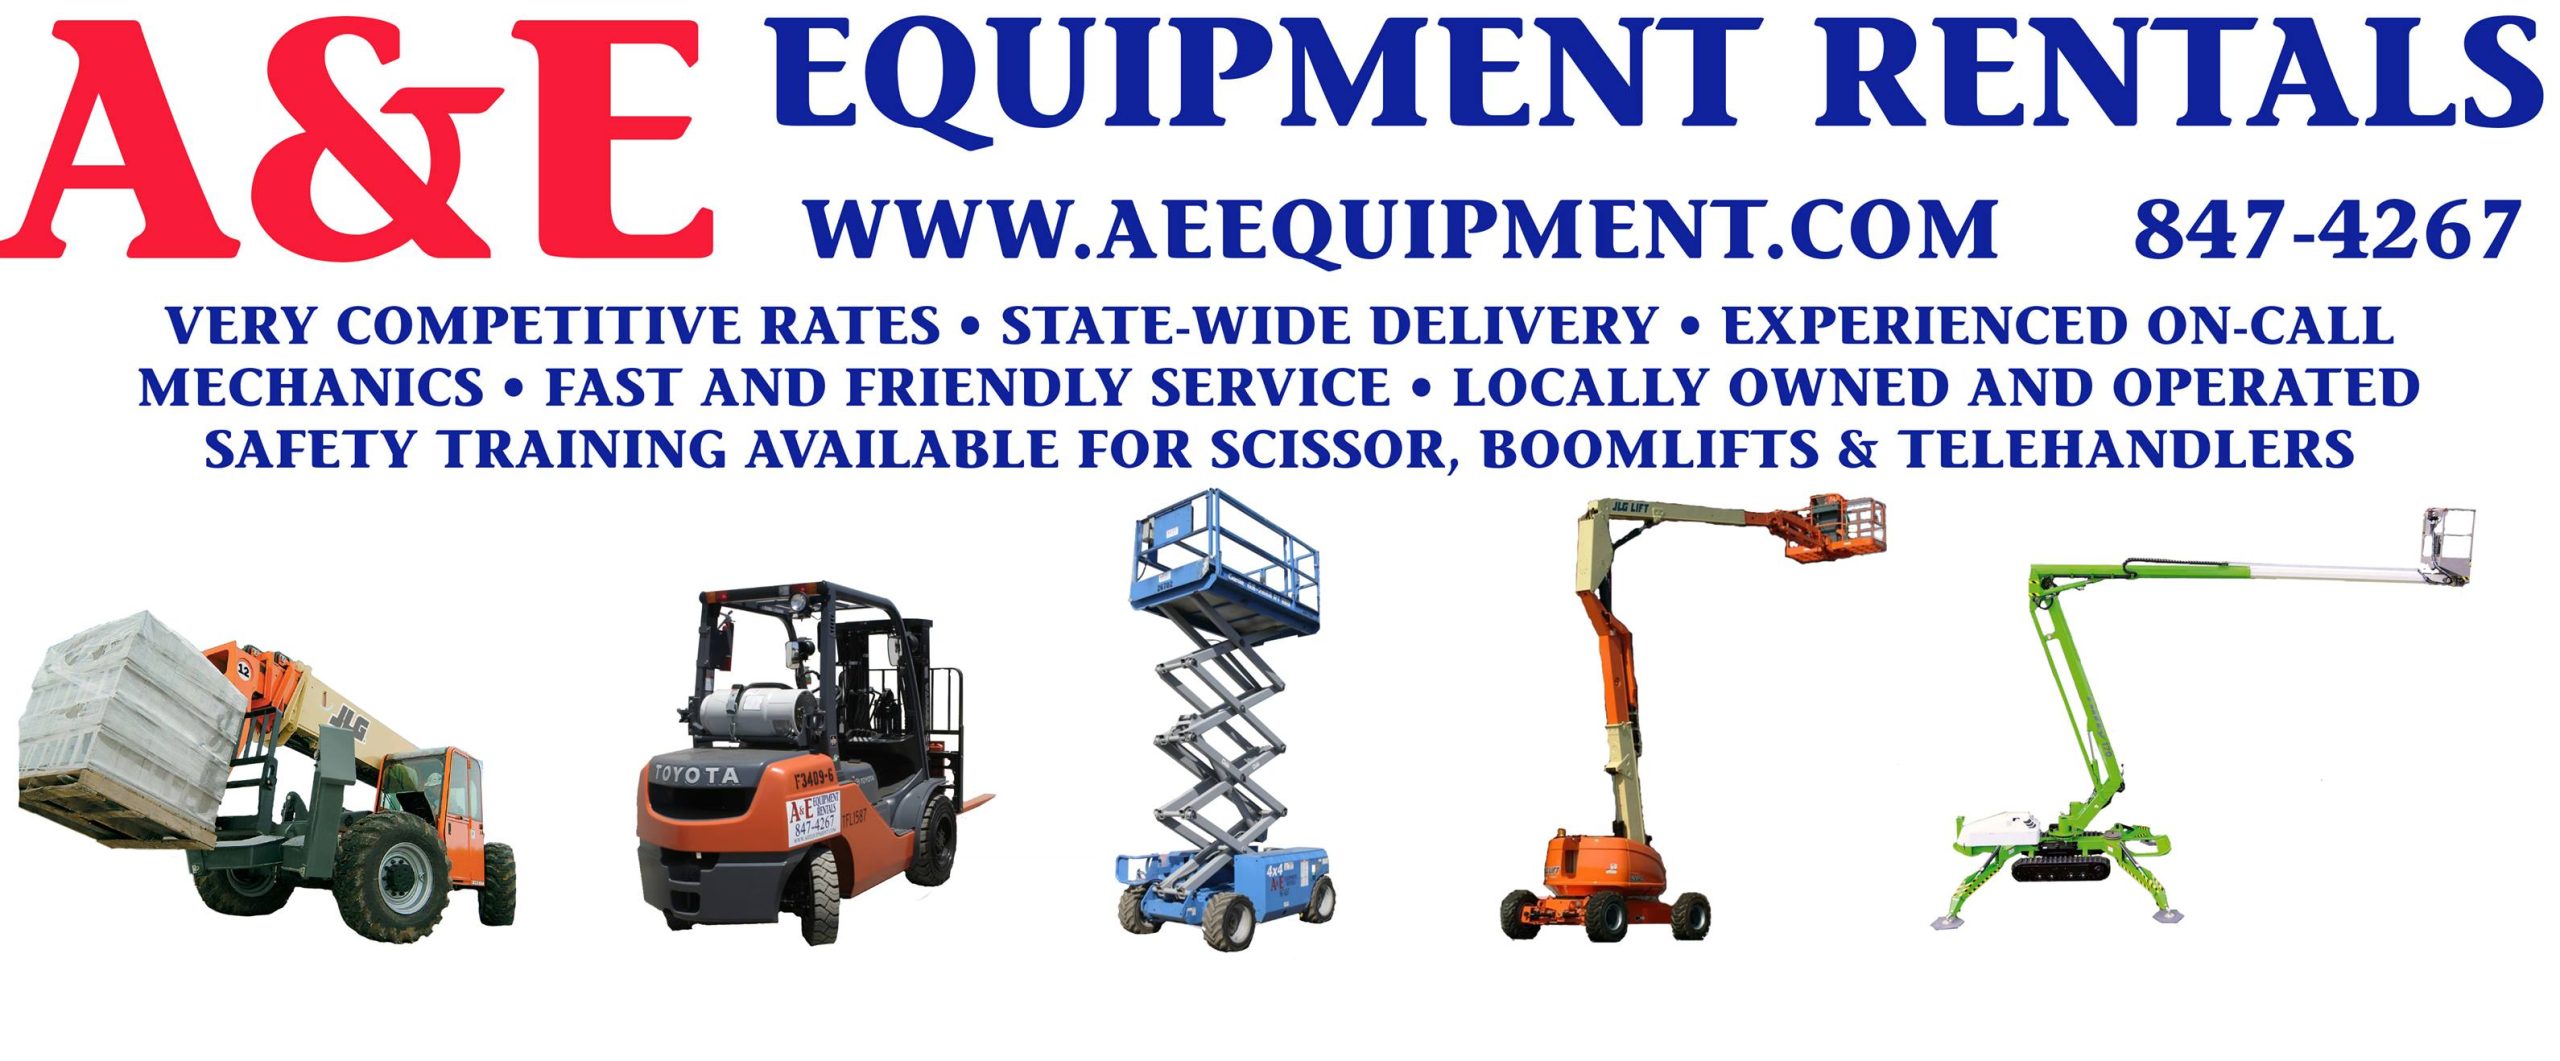 A&E Equipment Rentals Inc